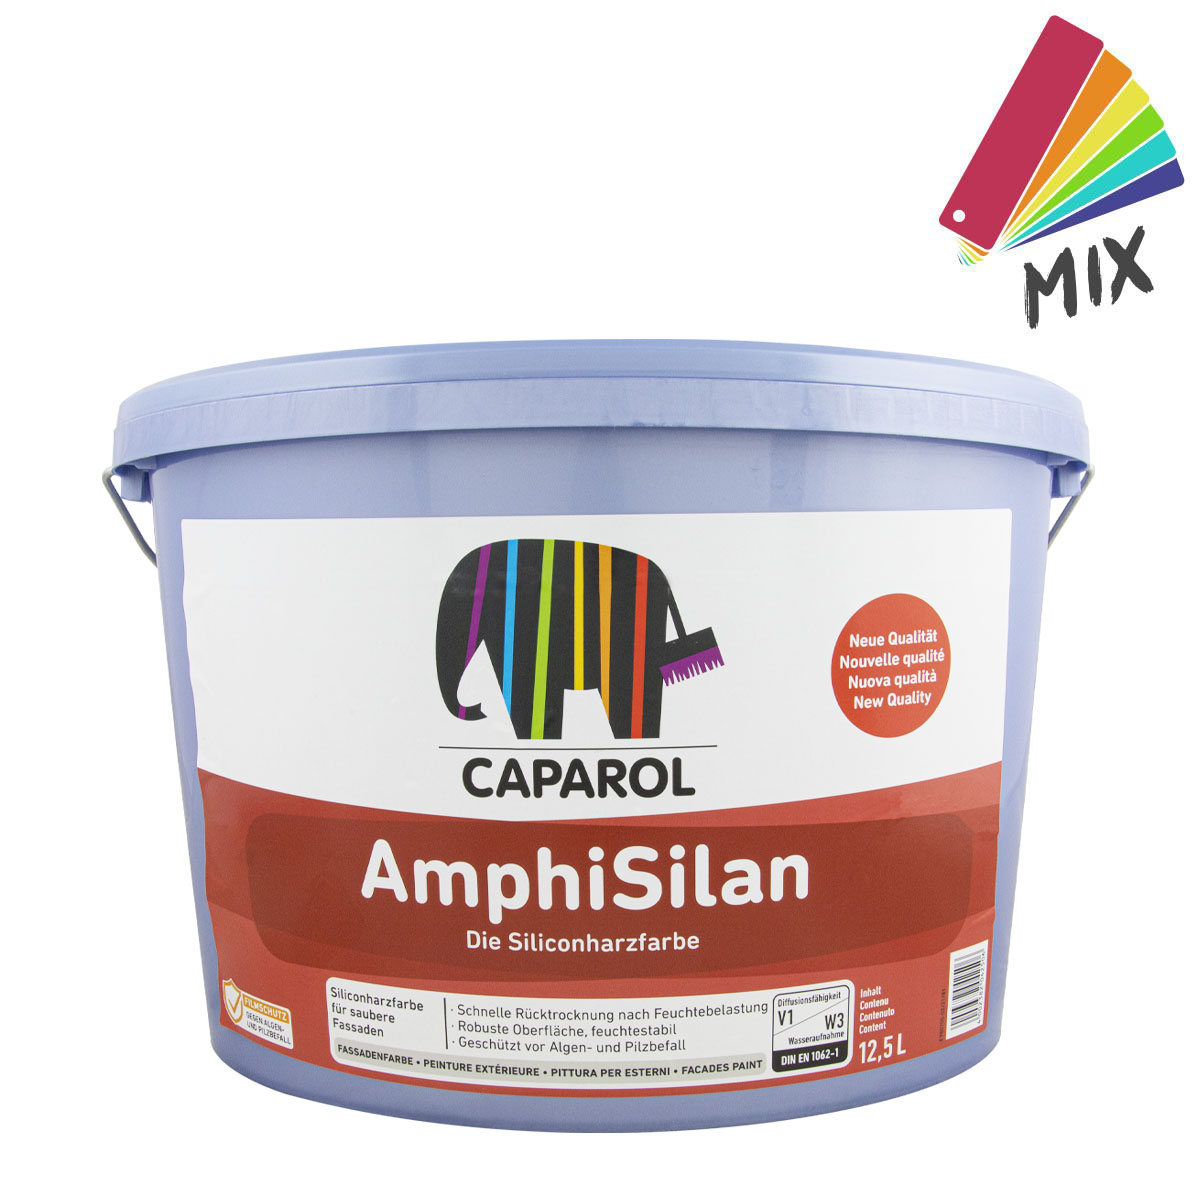 Caparol_amphisilan_12,5L_mix_gross